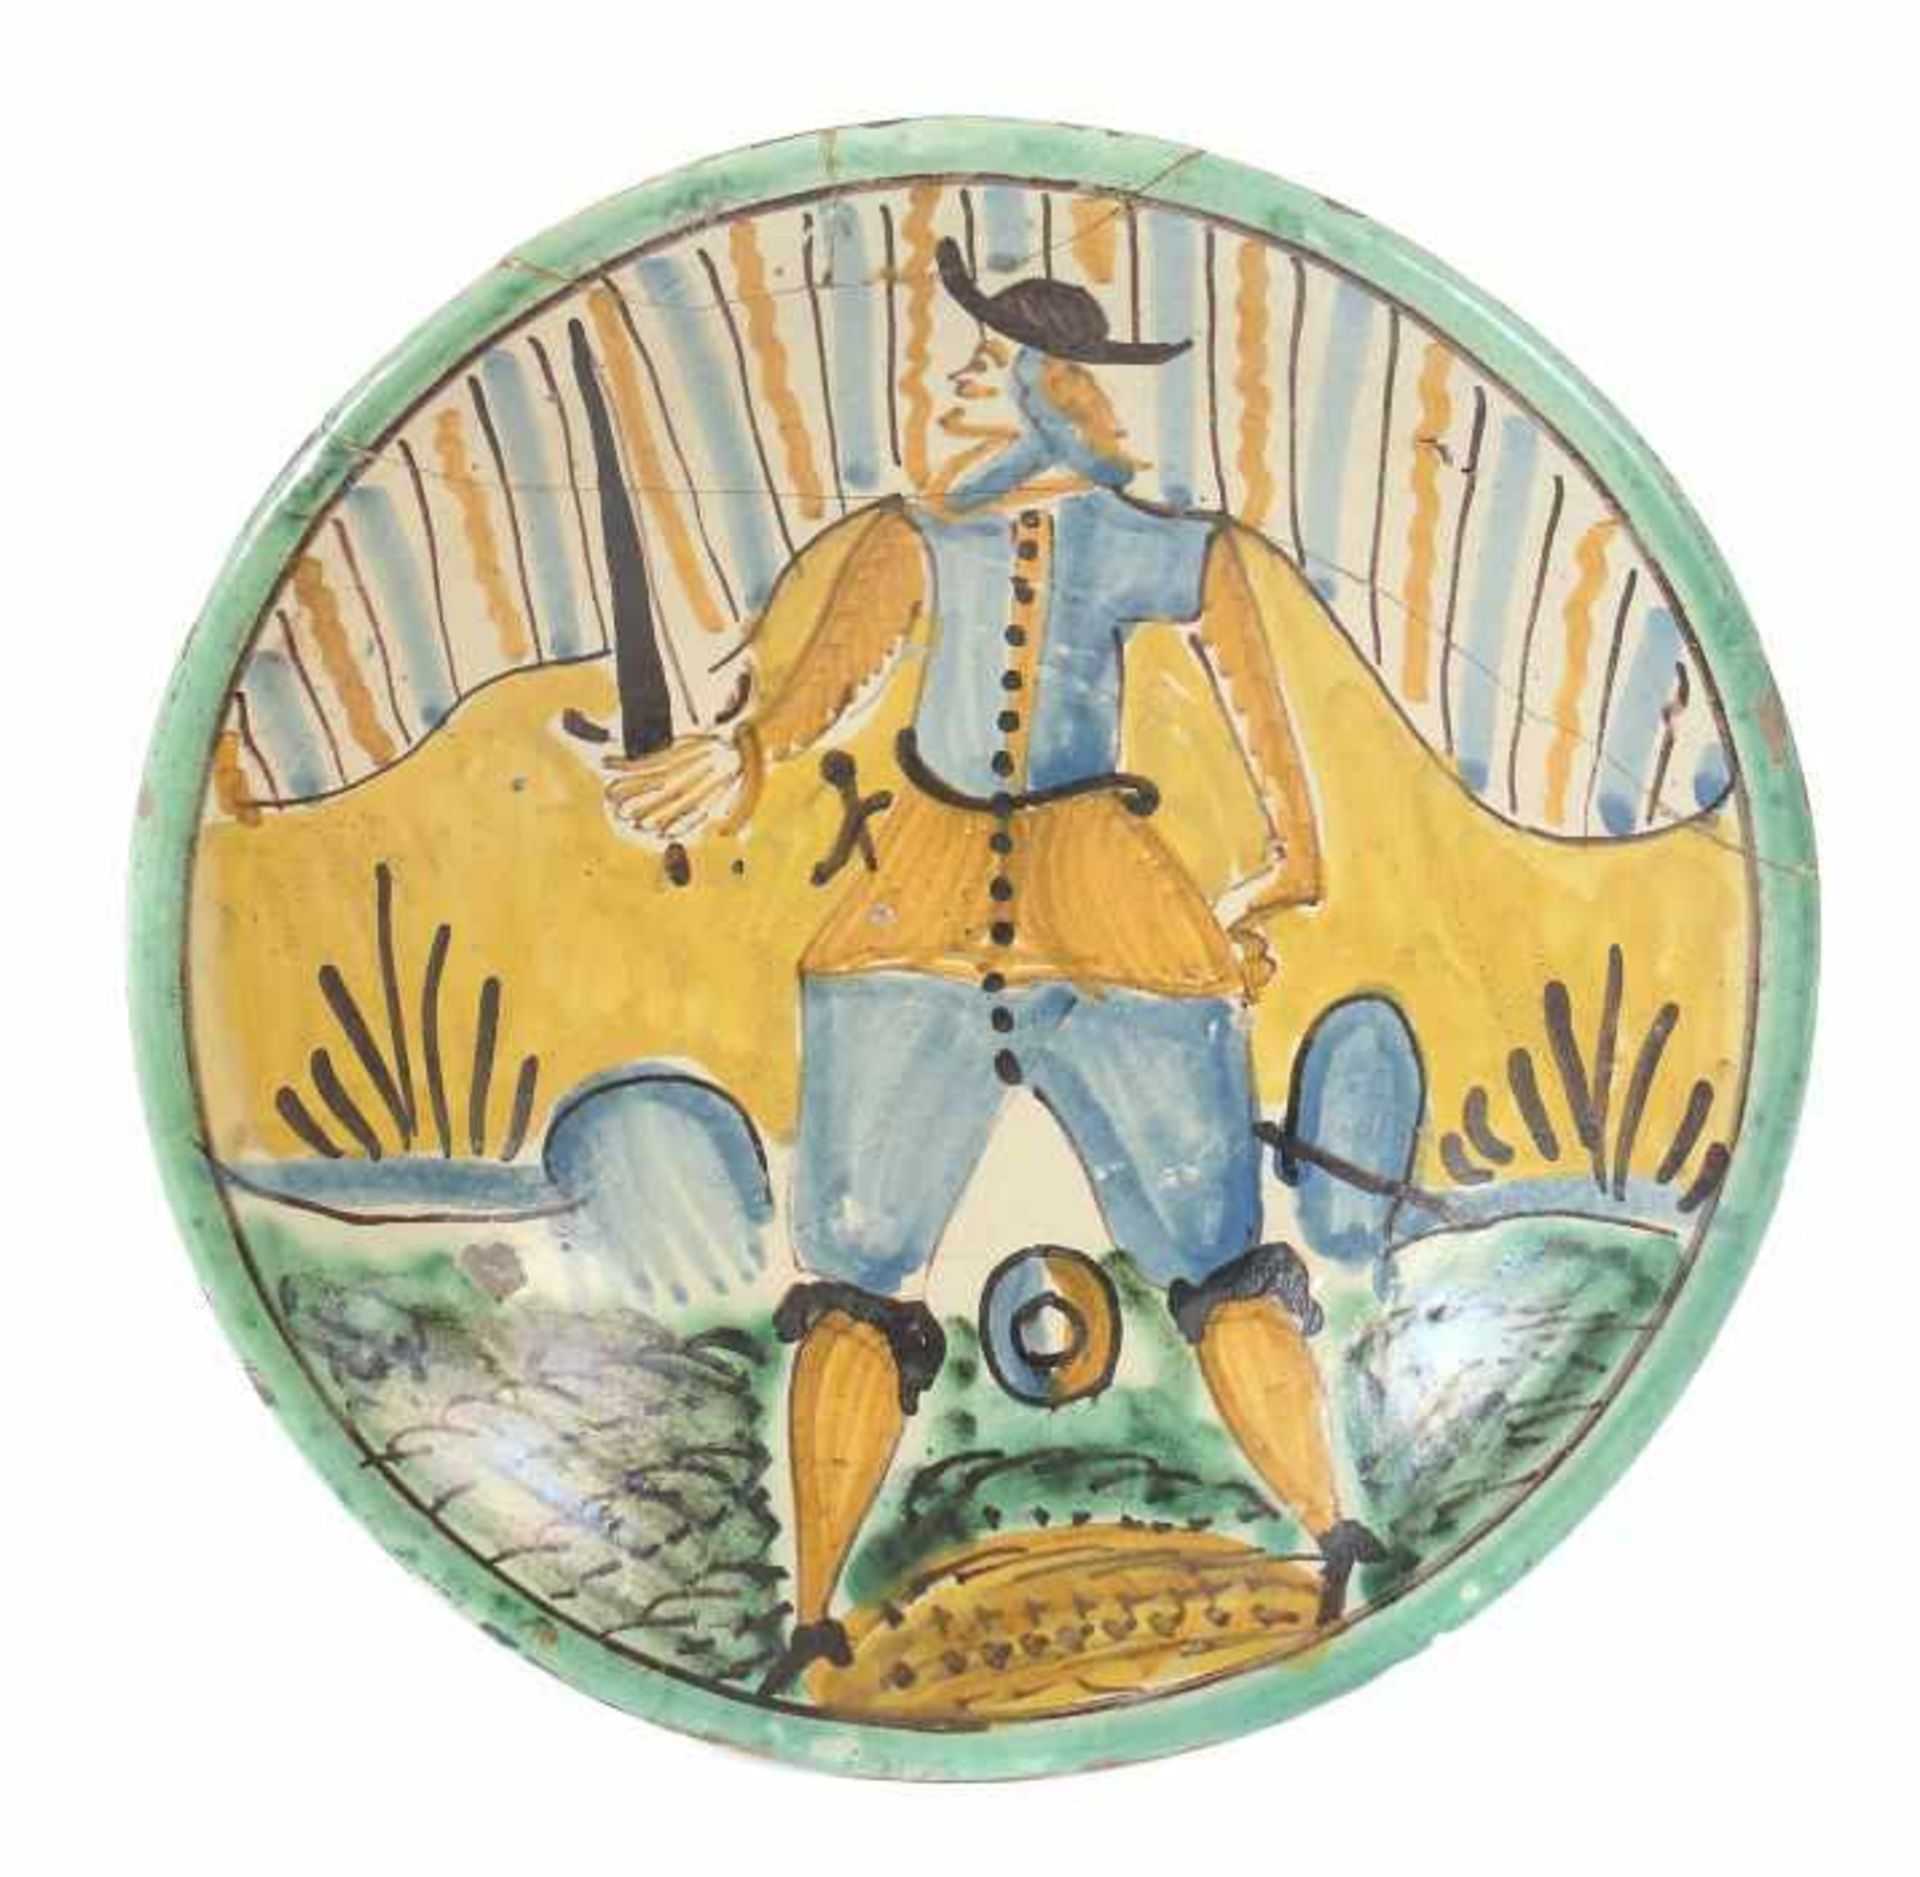 Majolikateller mit SoldatendarstellungMontelupo, um 1620-40, rötlich-beiger Scherben, hell glasiert,